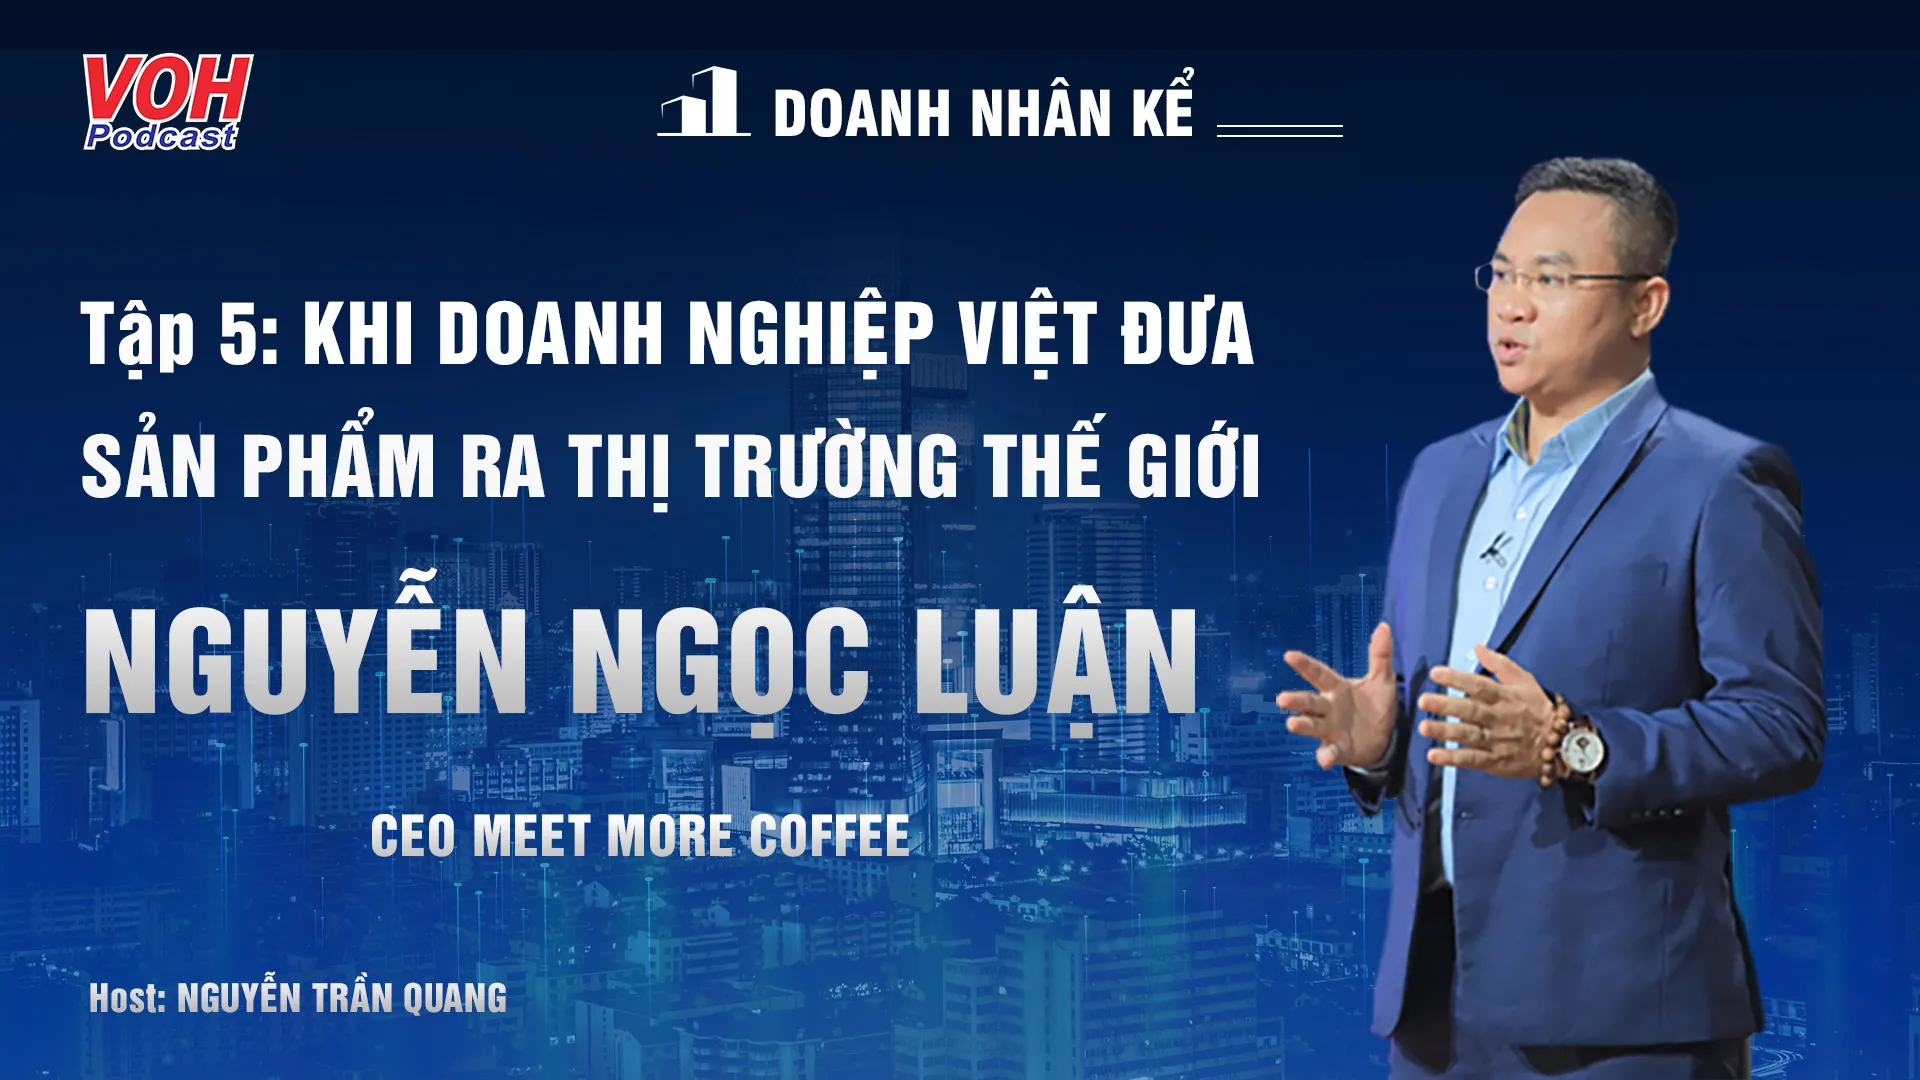 CEO Nguyễn Ngọc Luận: Đột phá cà phê trái cây | DNK #5